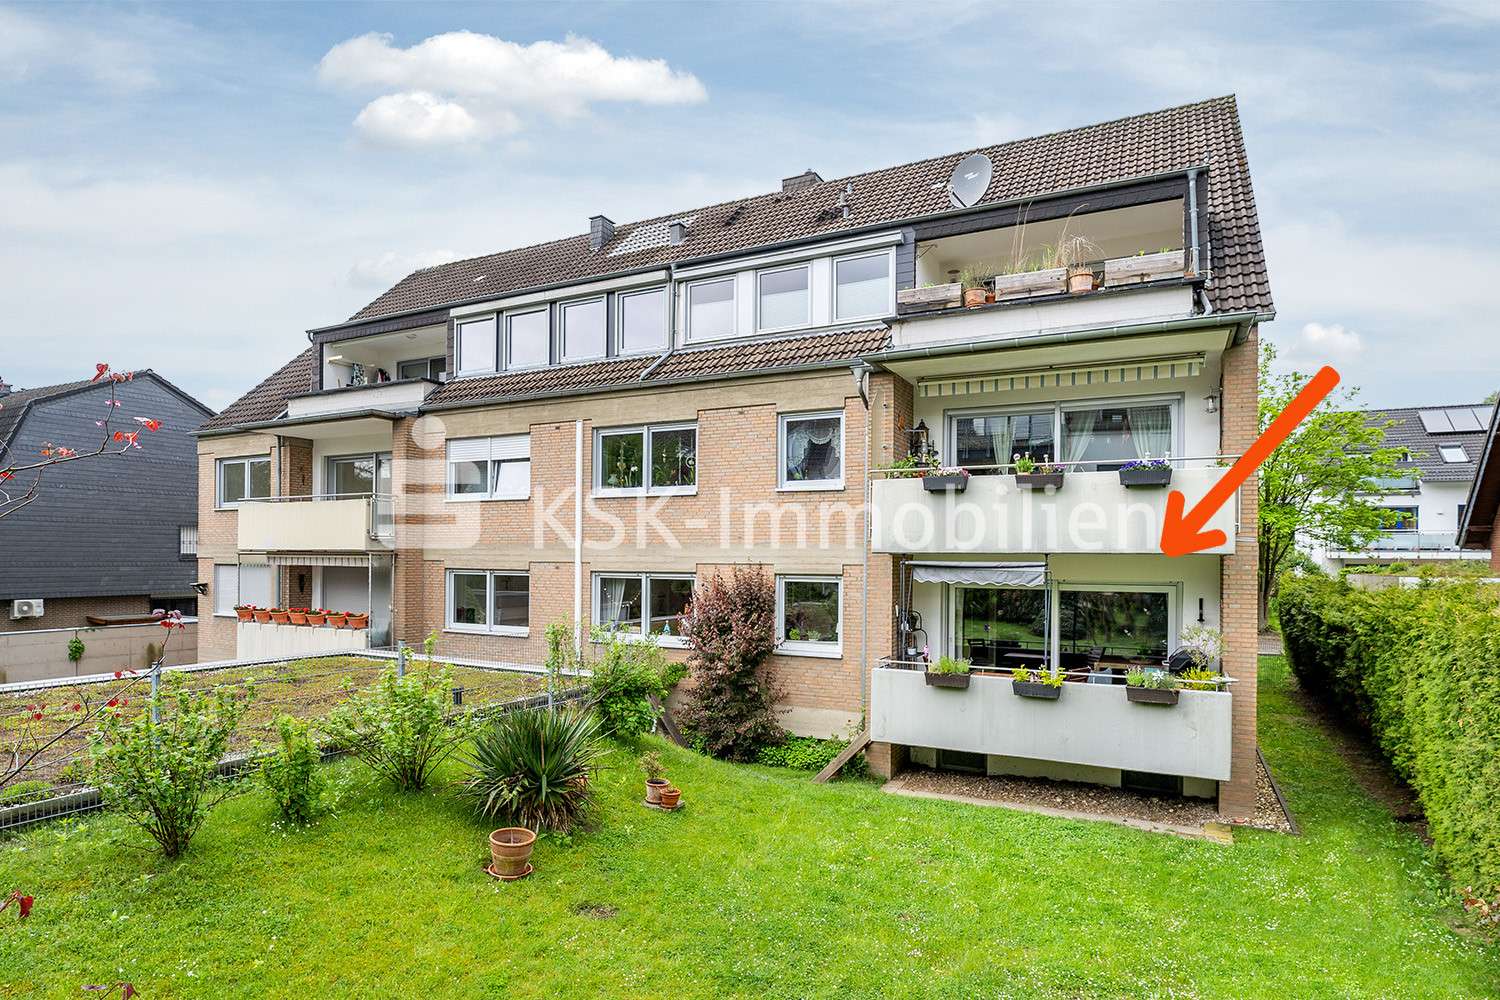 118437 Rückansicht - Etagenwohnung in 51467 Bergisch Gladbach / Schildgen mit 86m² günstig kaufen